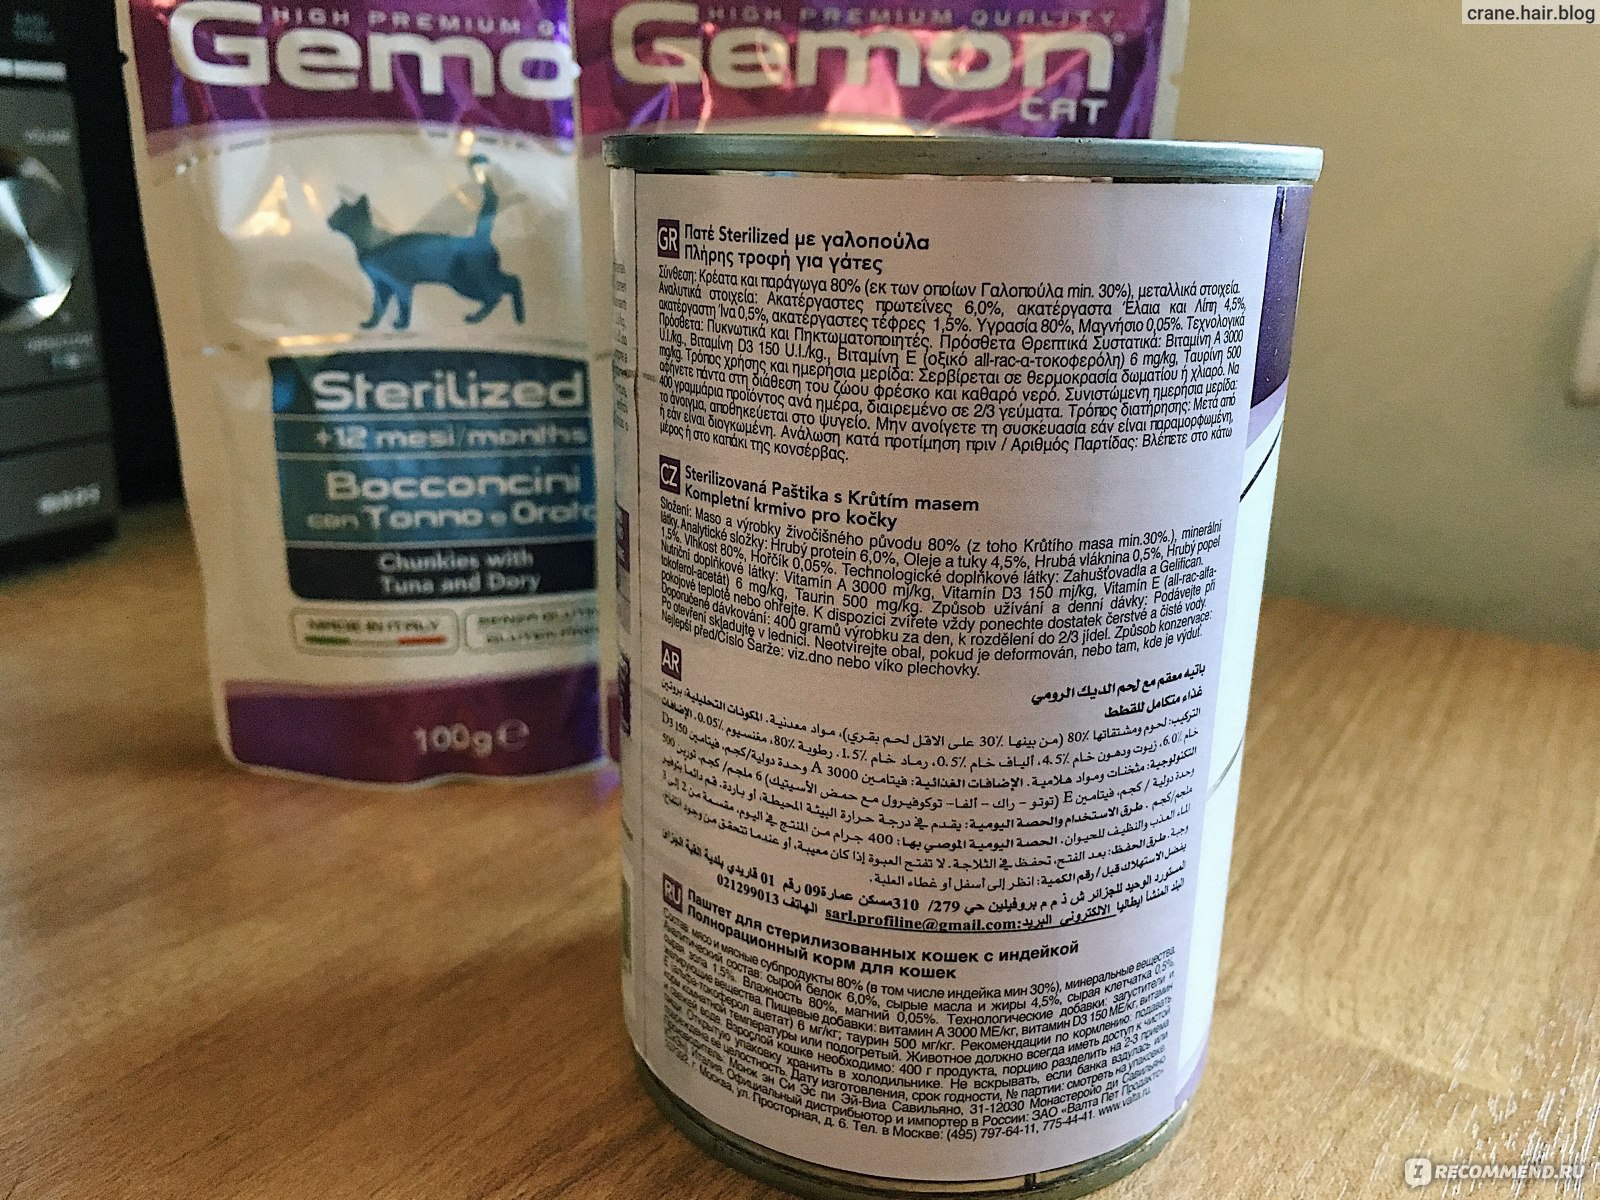 Gemon: корм для собак, состав сухого питания